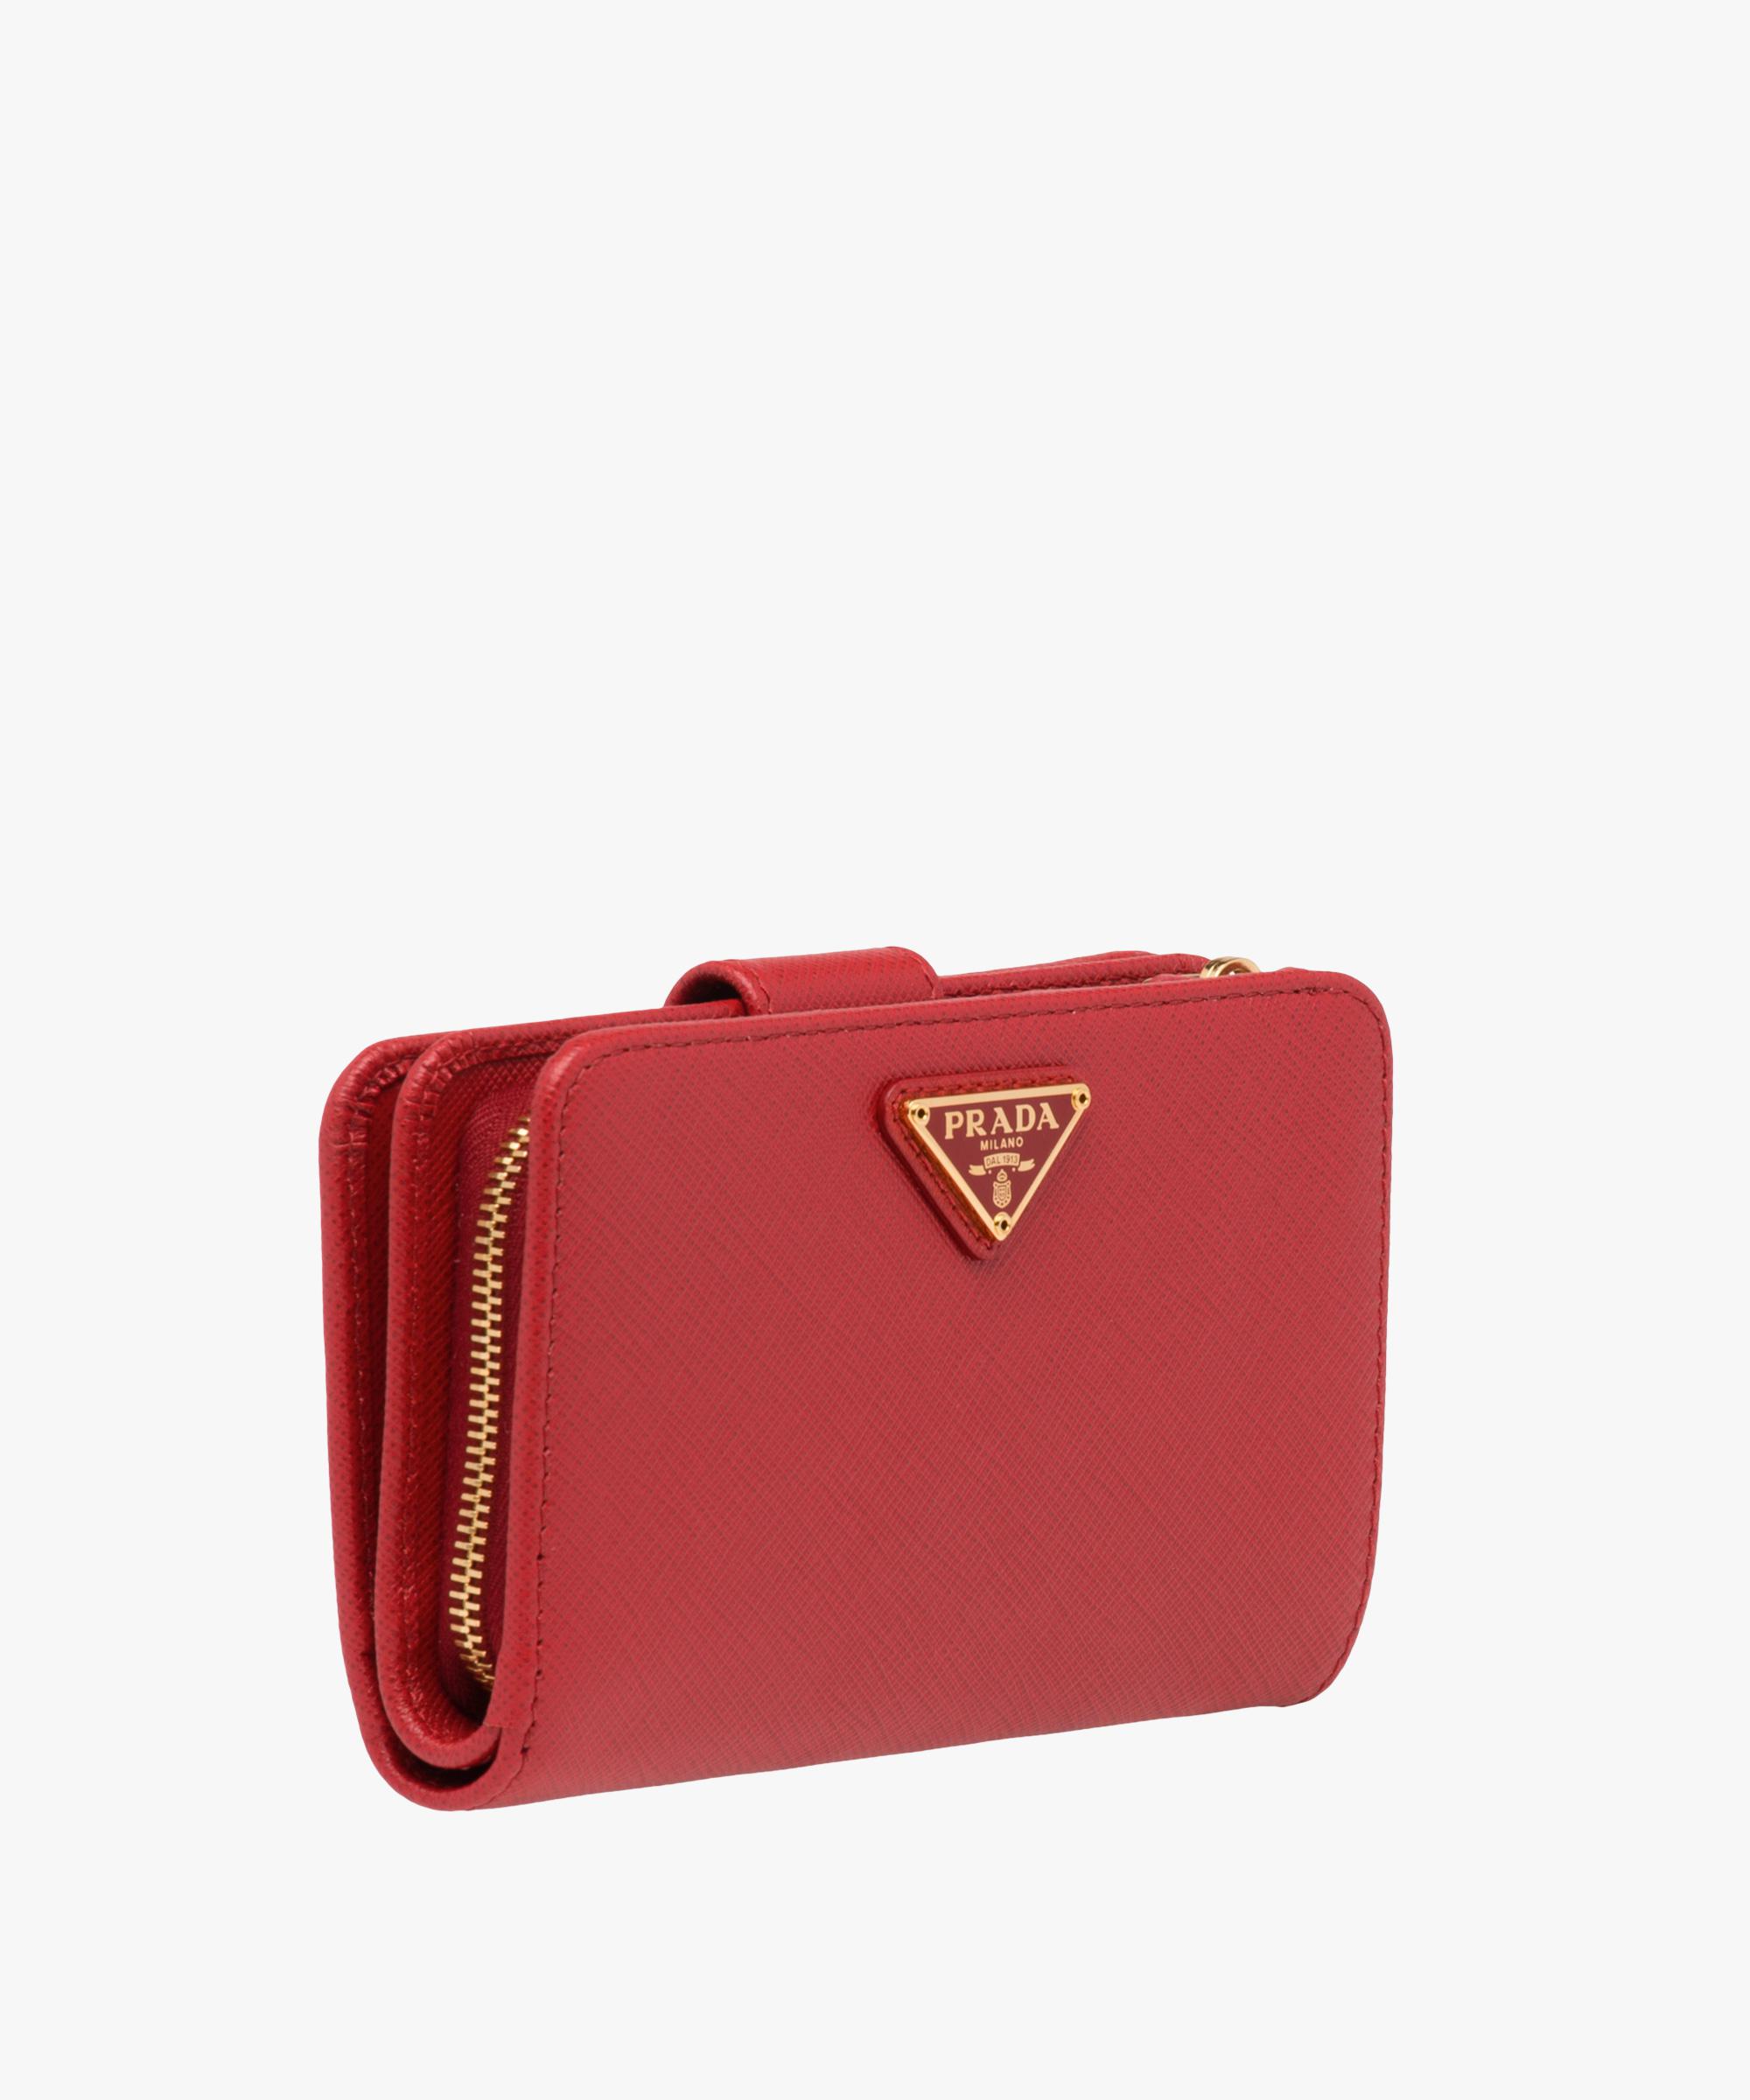 voorspelling meel Verlichten Prada Medium Saffiano Leather Wallet in Red | Lyst